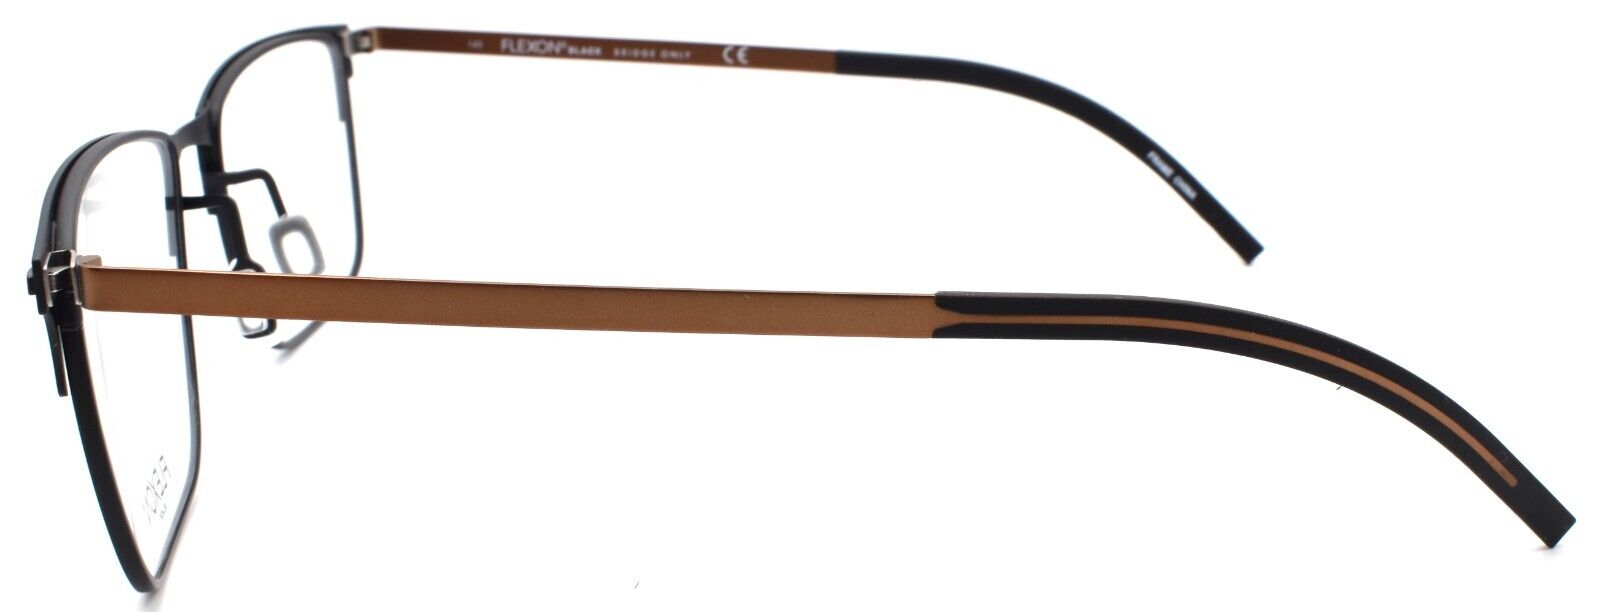 3-Flexon B2031 002 Men's Eyeglasses Matte Black 57-18-145 Flexible Titanium-883900205122-IKSpecs